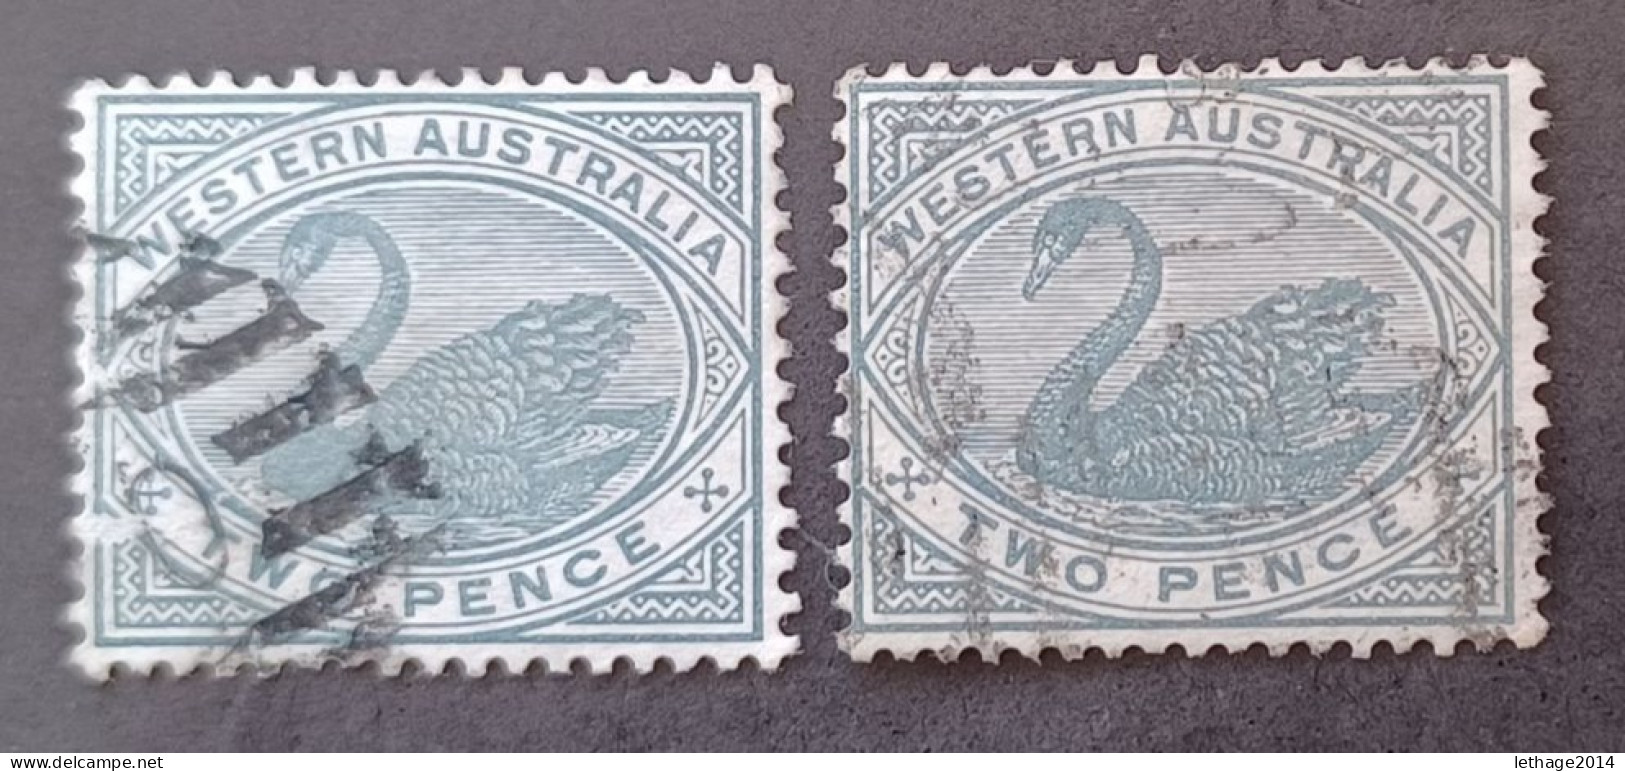 WESTERN AUSTRALIA 1888 SWAN CAT GIBBONS N 96 WMK CROWN CA - Used Stamps